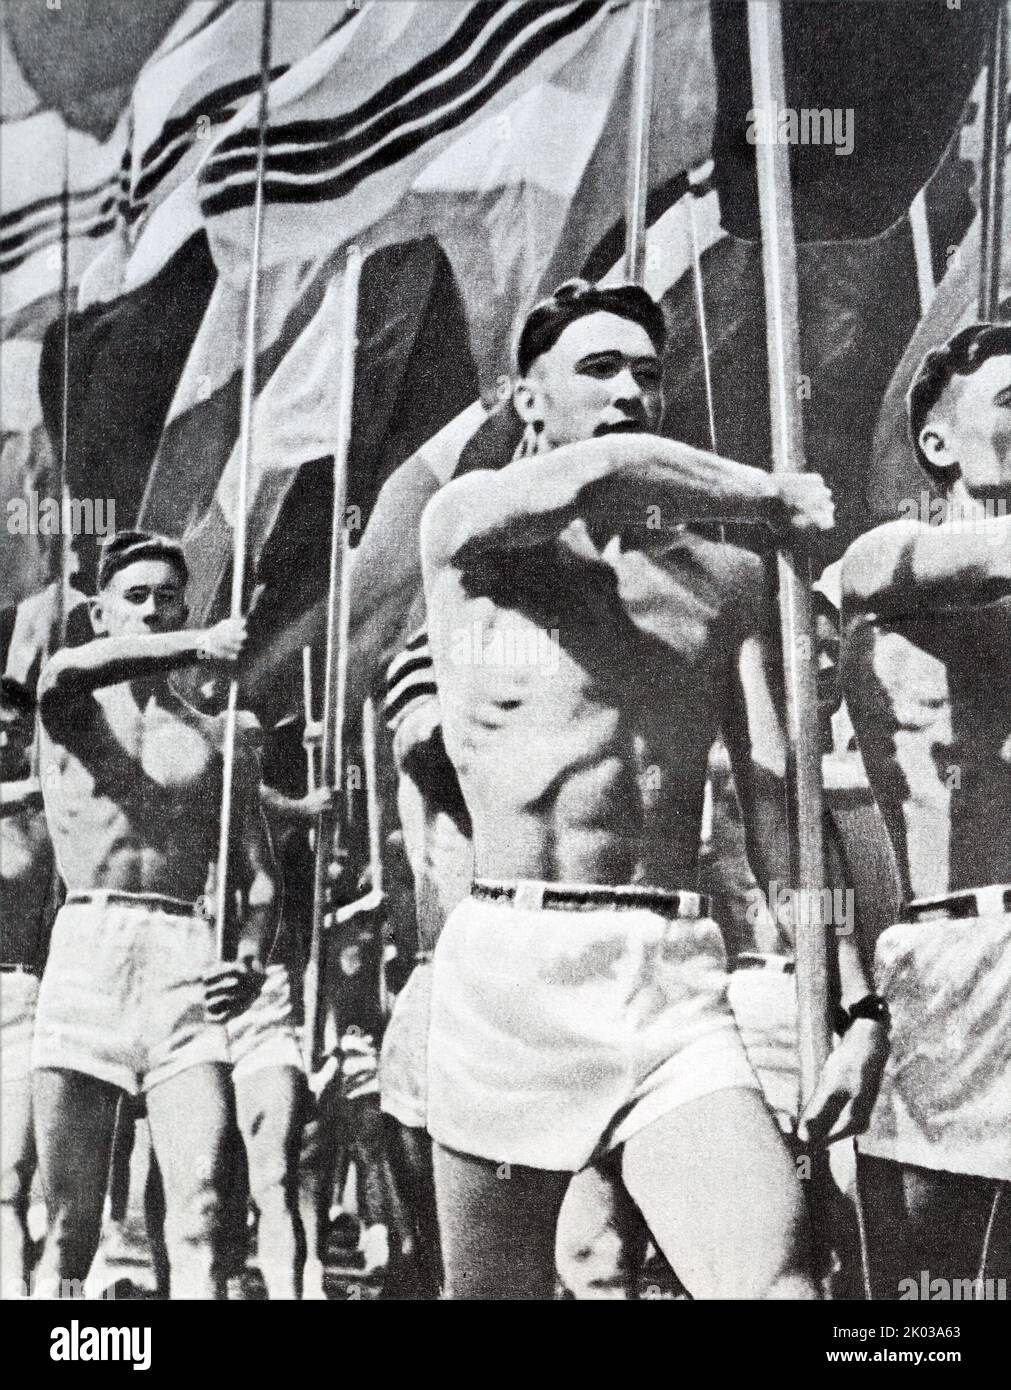 Propagandafoto der sowjetischen Athleten bei einem Sportereignis. 1962 Stockfoto